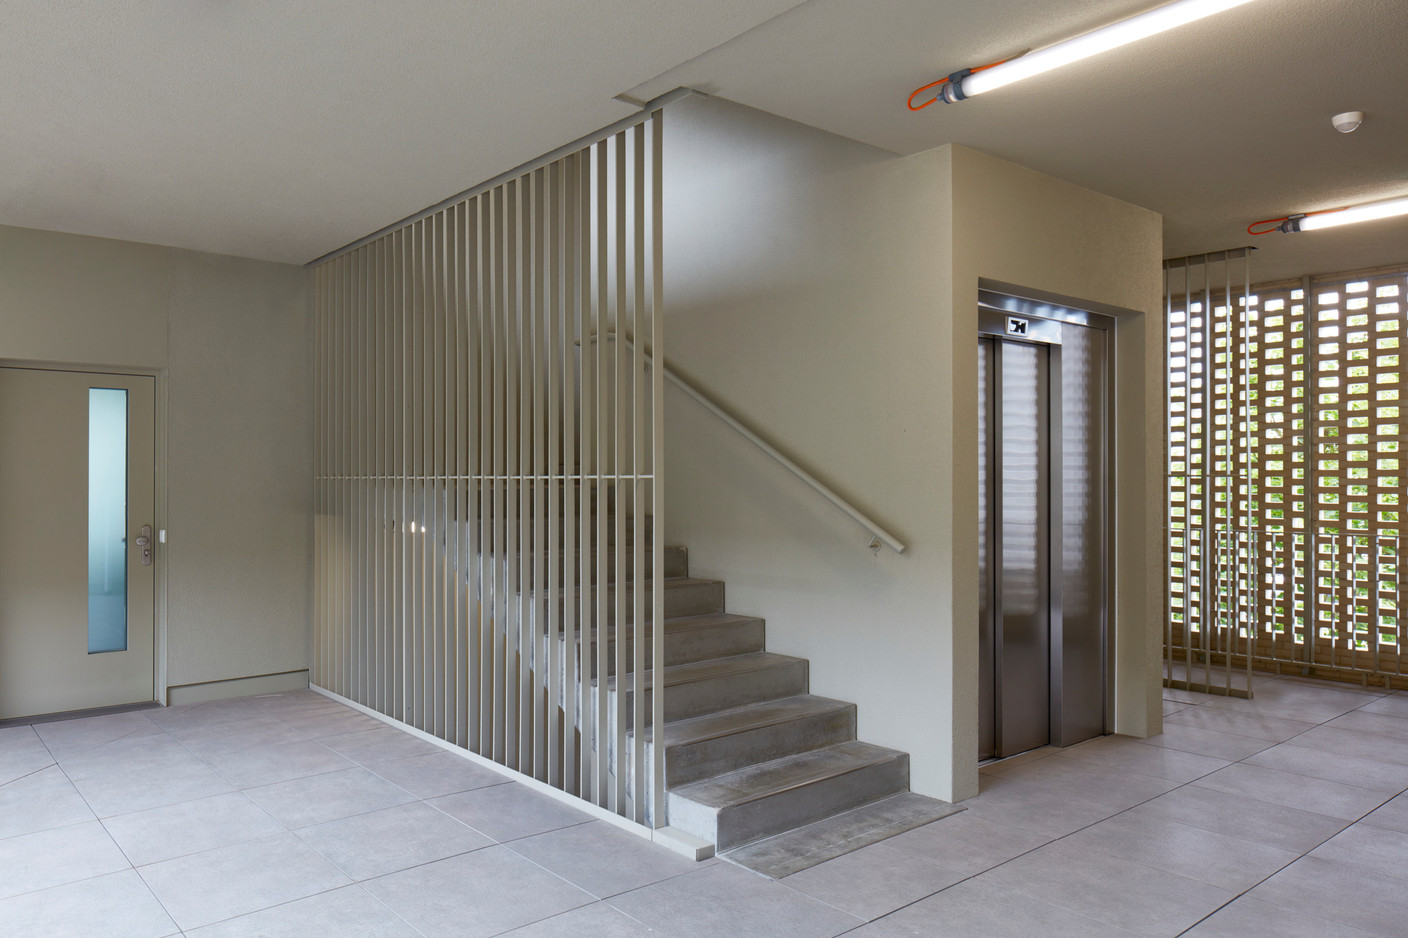 Les circulations verticales sont naturellement aérées grâce à la façade en briques. (Photo: Palladium Photodesign)